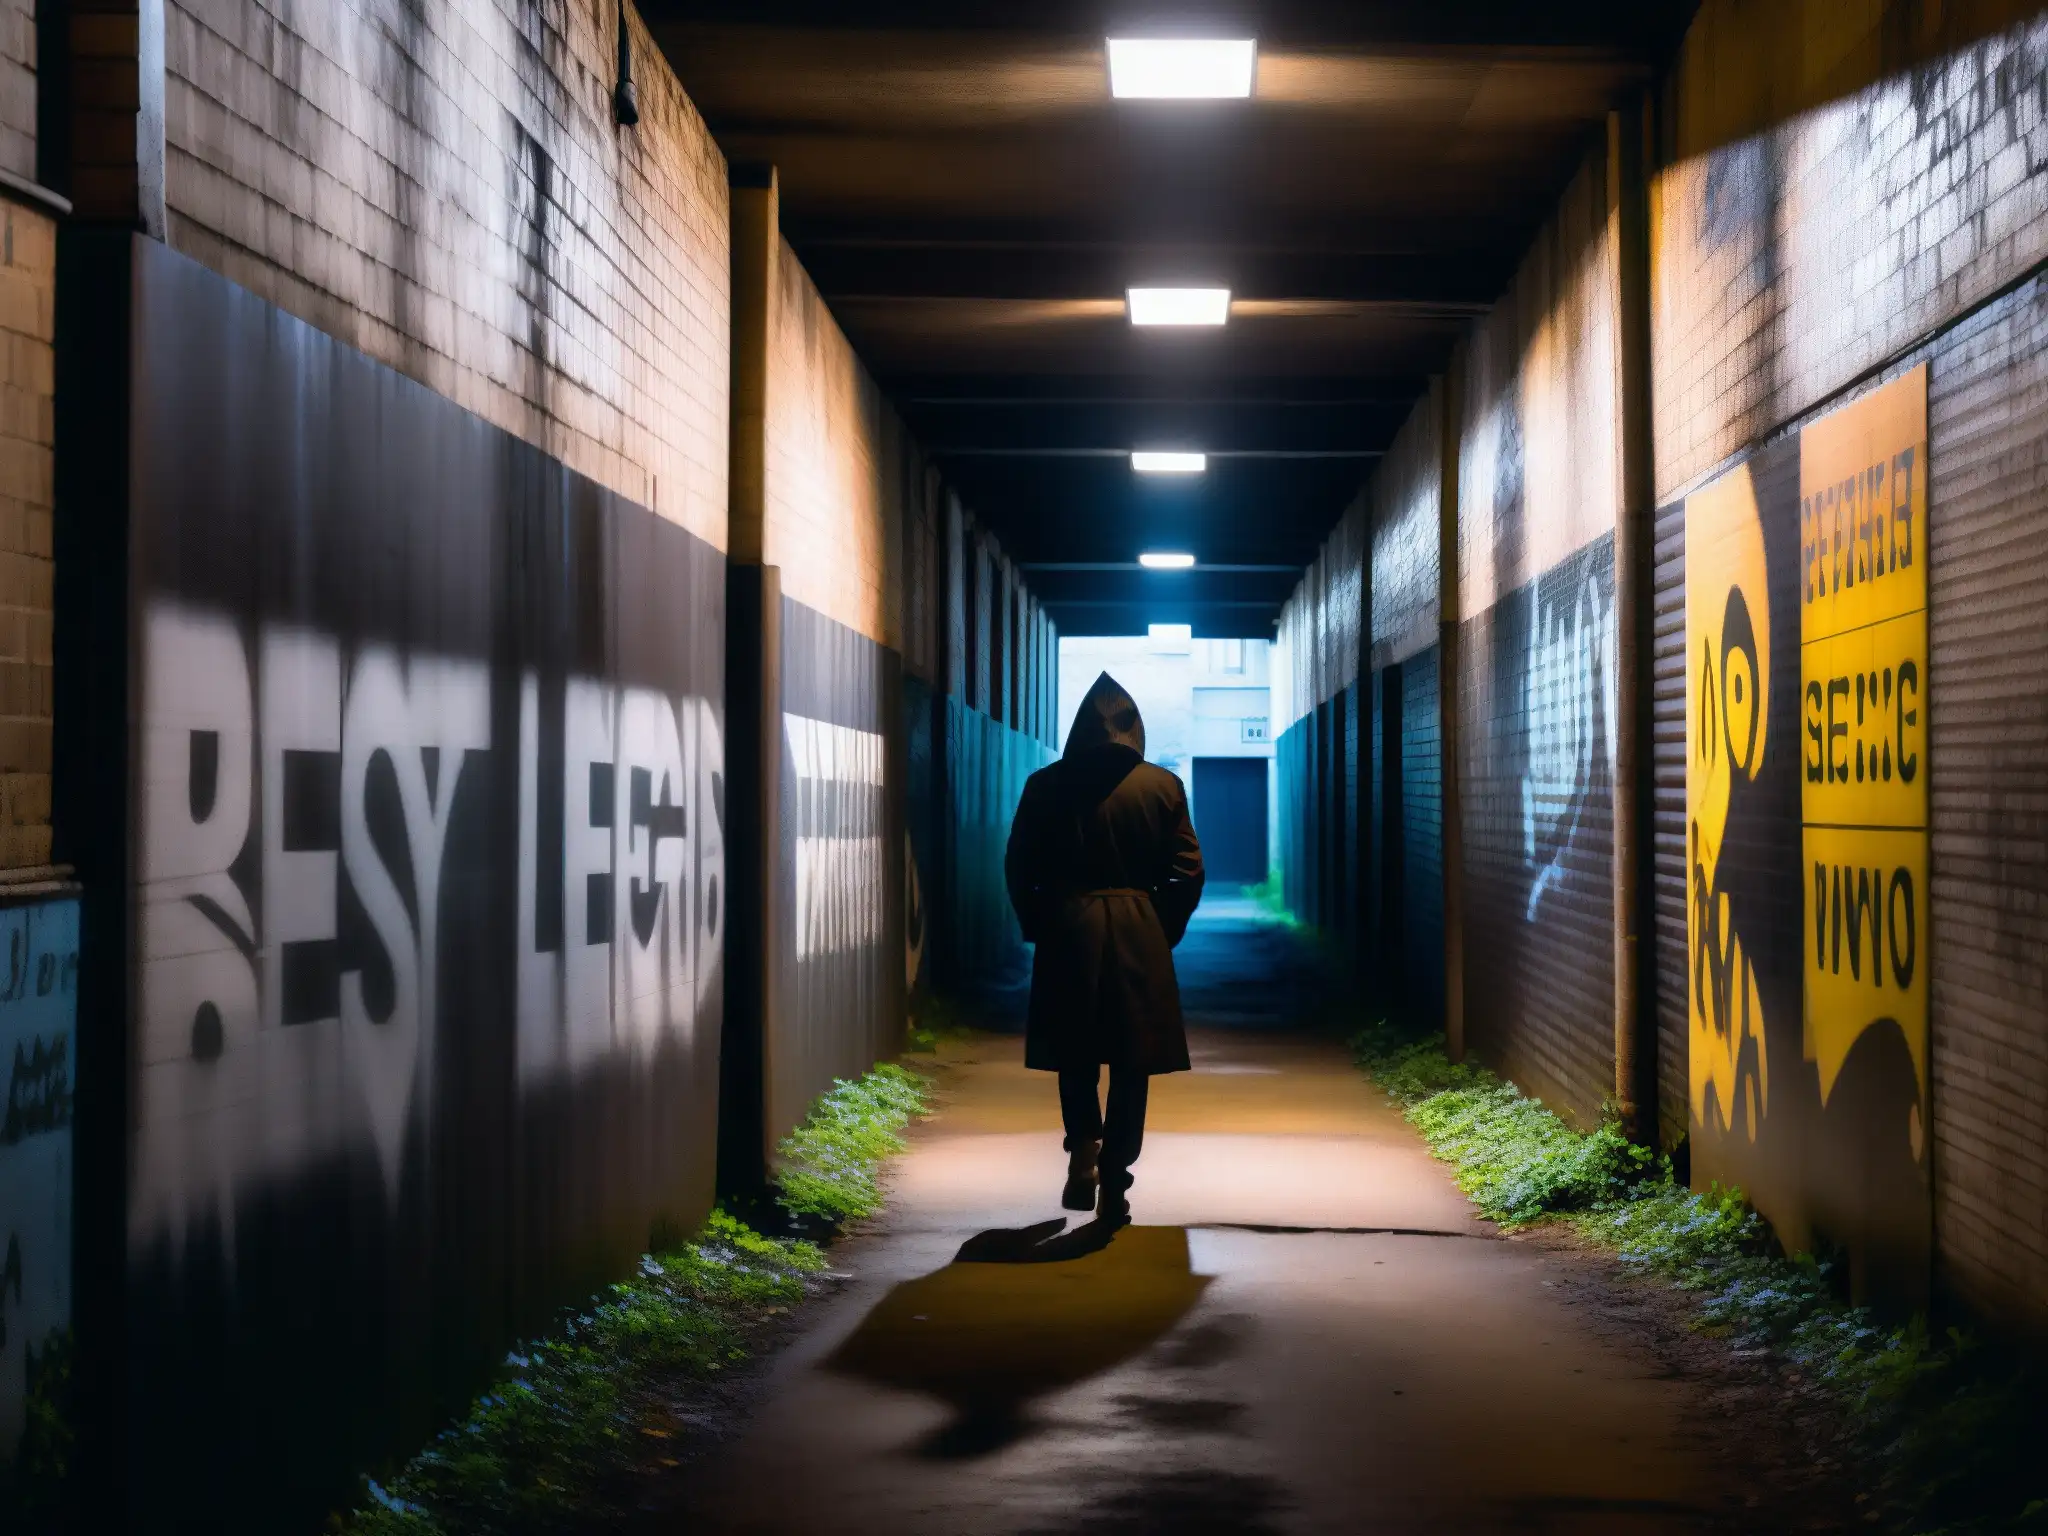 La oscuridad del callejón con grafitis crea un ambiente inquietante y misterioso, con una figura solitaria al fondo